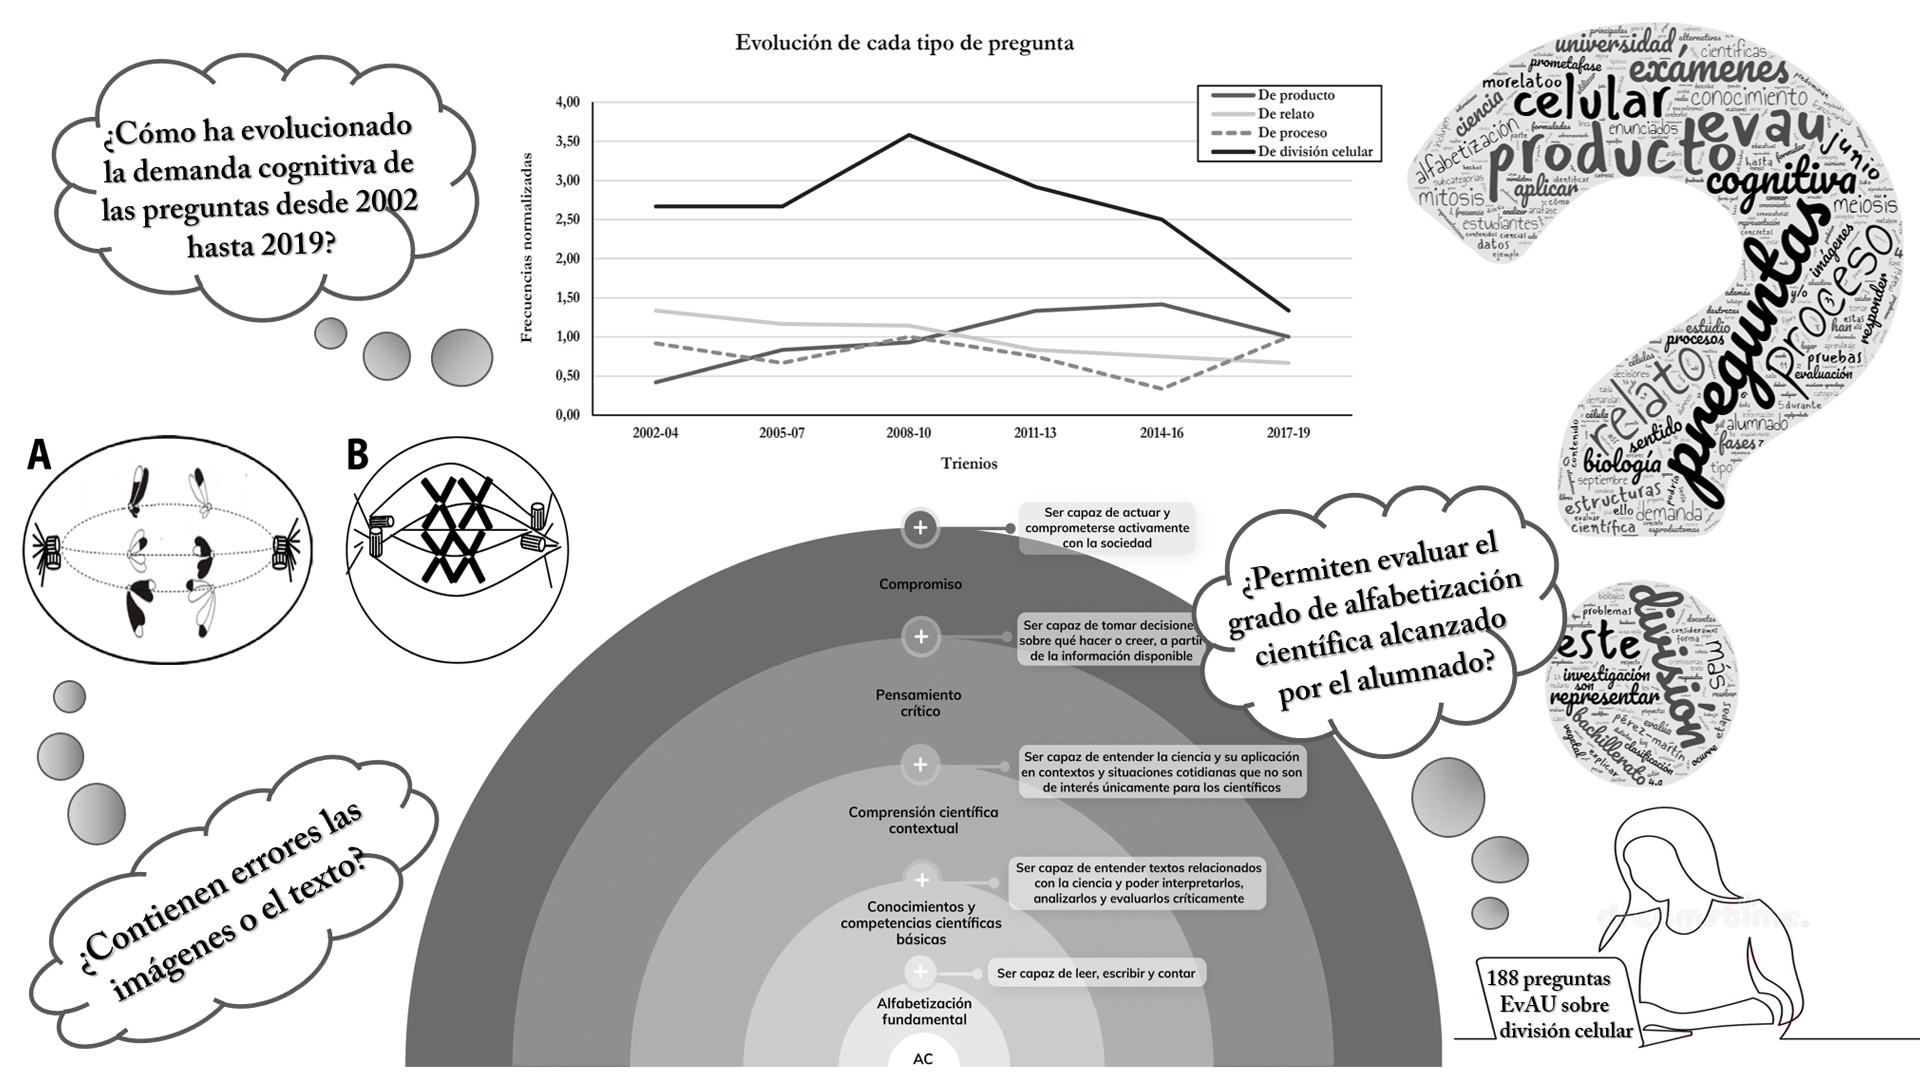 Ilustración que muestra un mapa visual en el que se representan los principales resultados tras el análisis de las 188 preguntas de EvAU sobre división celular de la Comunidad de Madrid desde 2002 hasta 2019